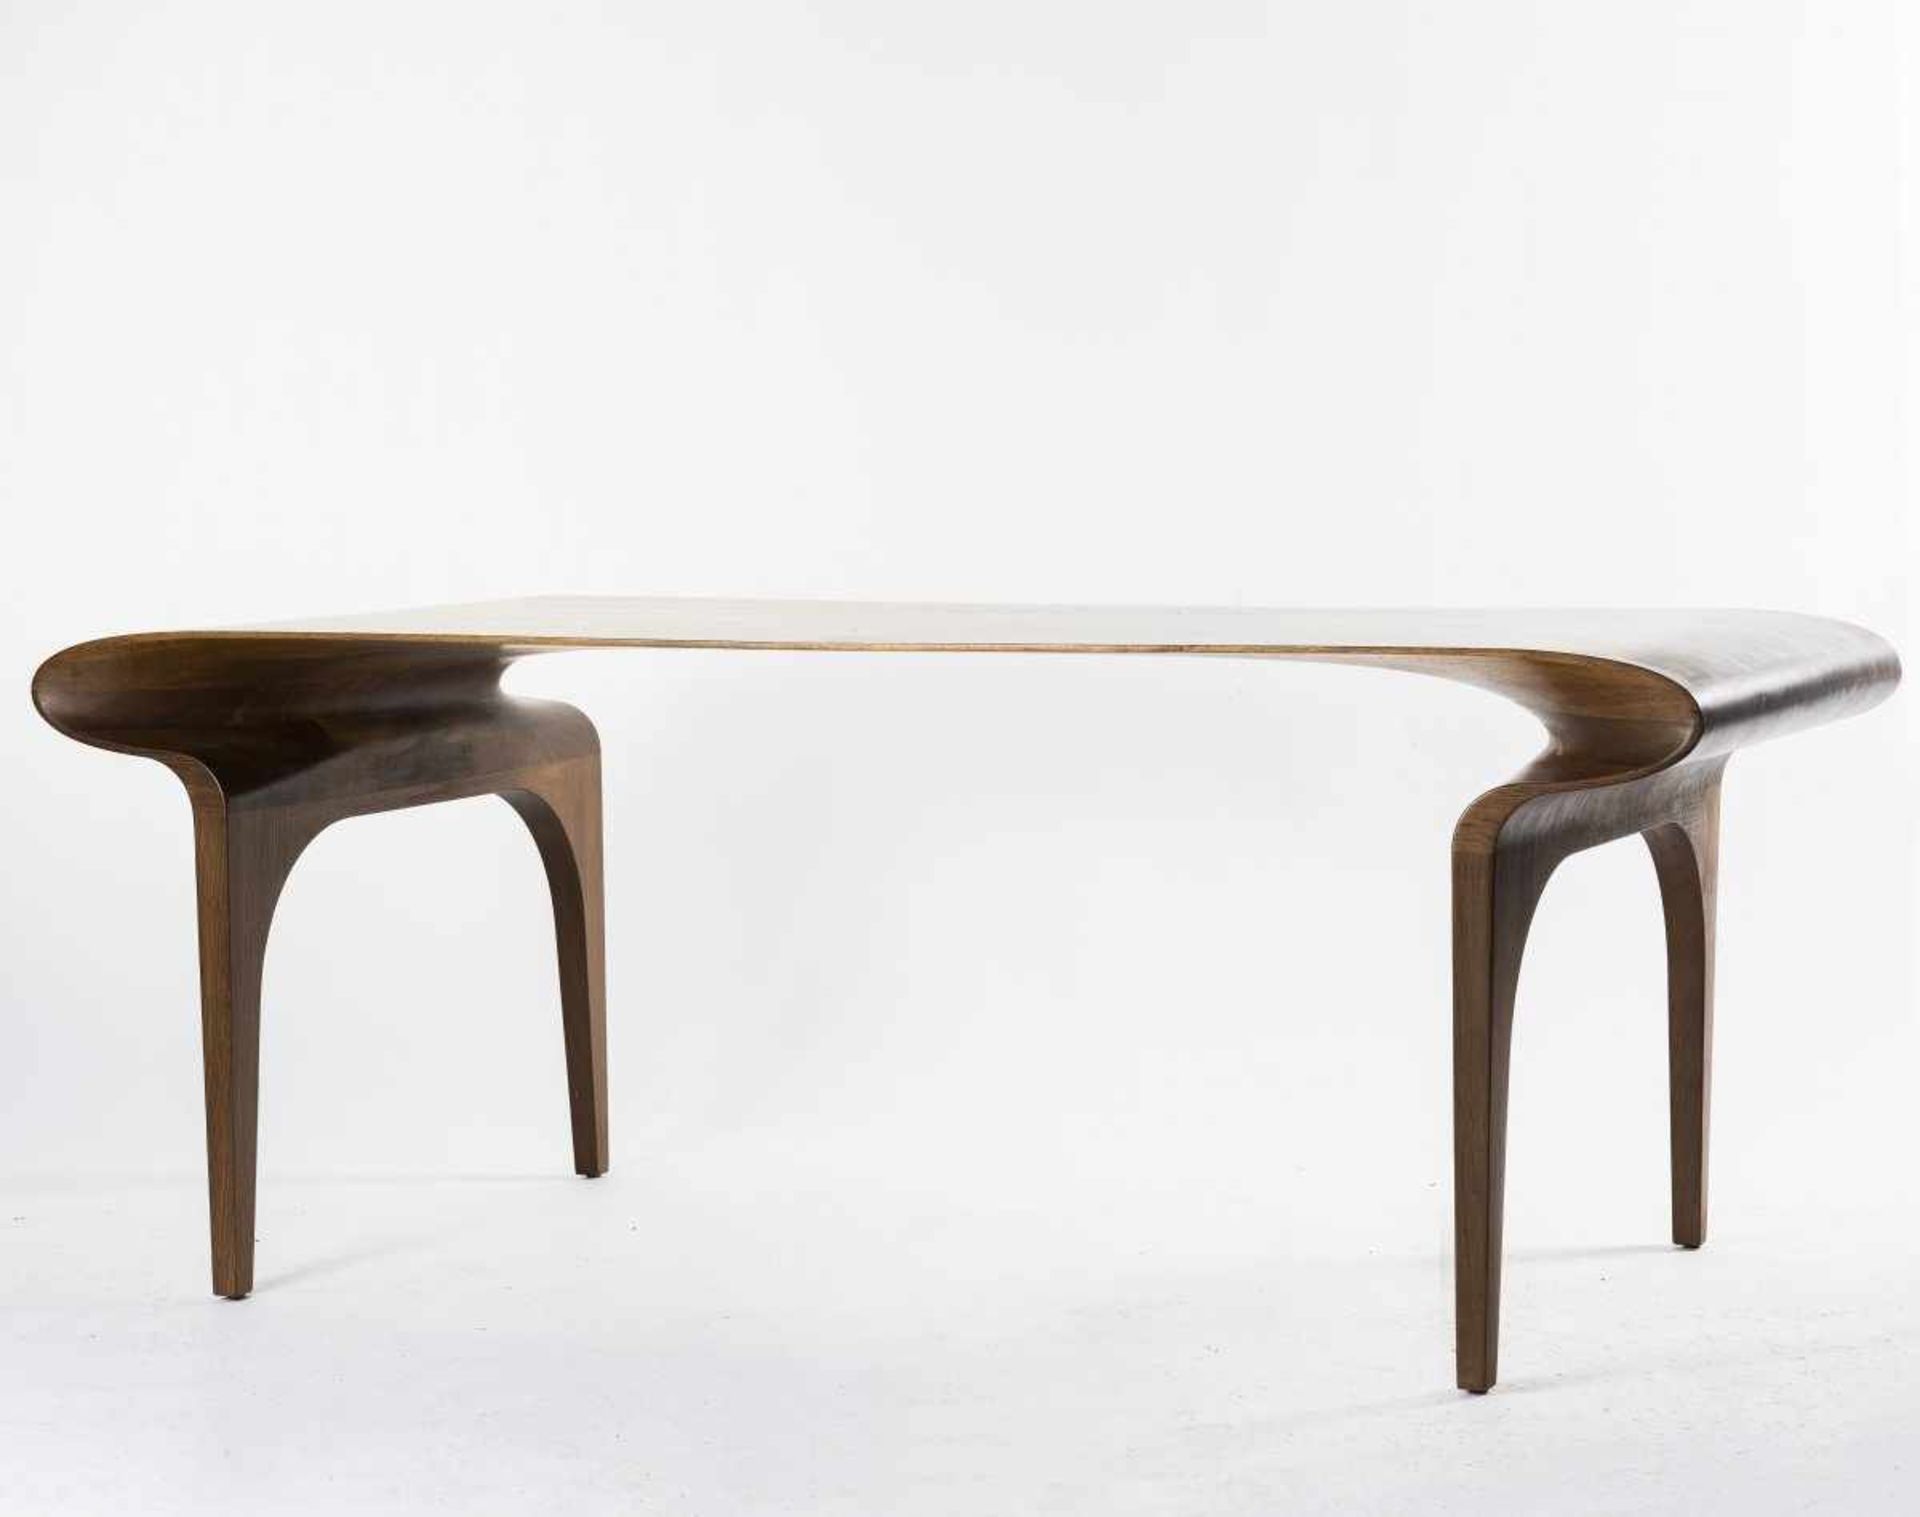 Bodo Sperlein, 'Contour' desk, c. 2009 'Contour' desk, c. 2009 H. 74 x 191 x 90.5 cm. Dark walnut